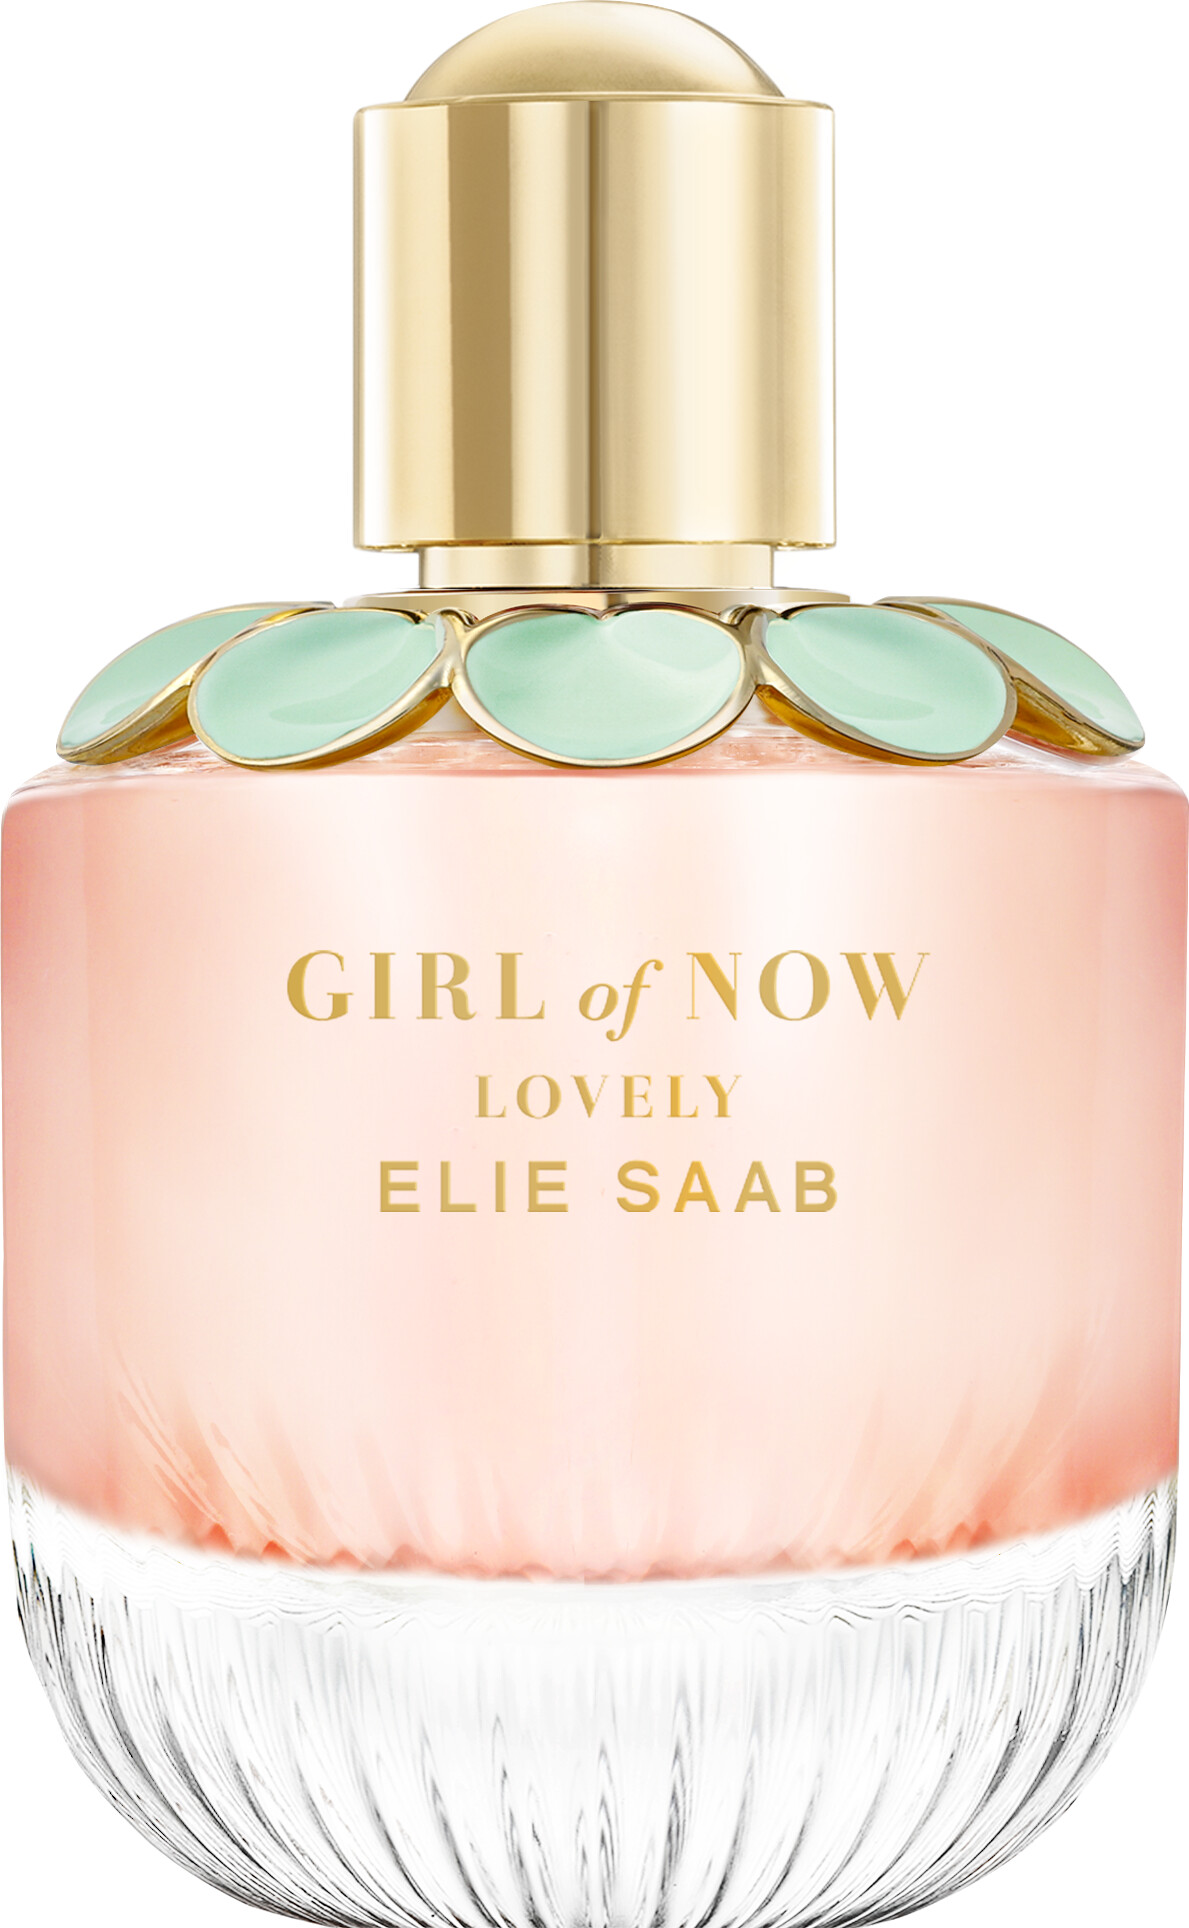 Elie Saab Girl of Now Lovely Eau de Parfum Spray 90ml